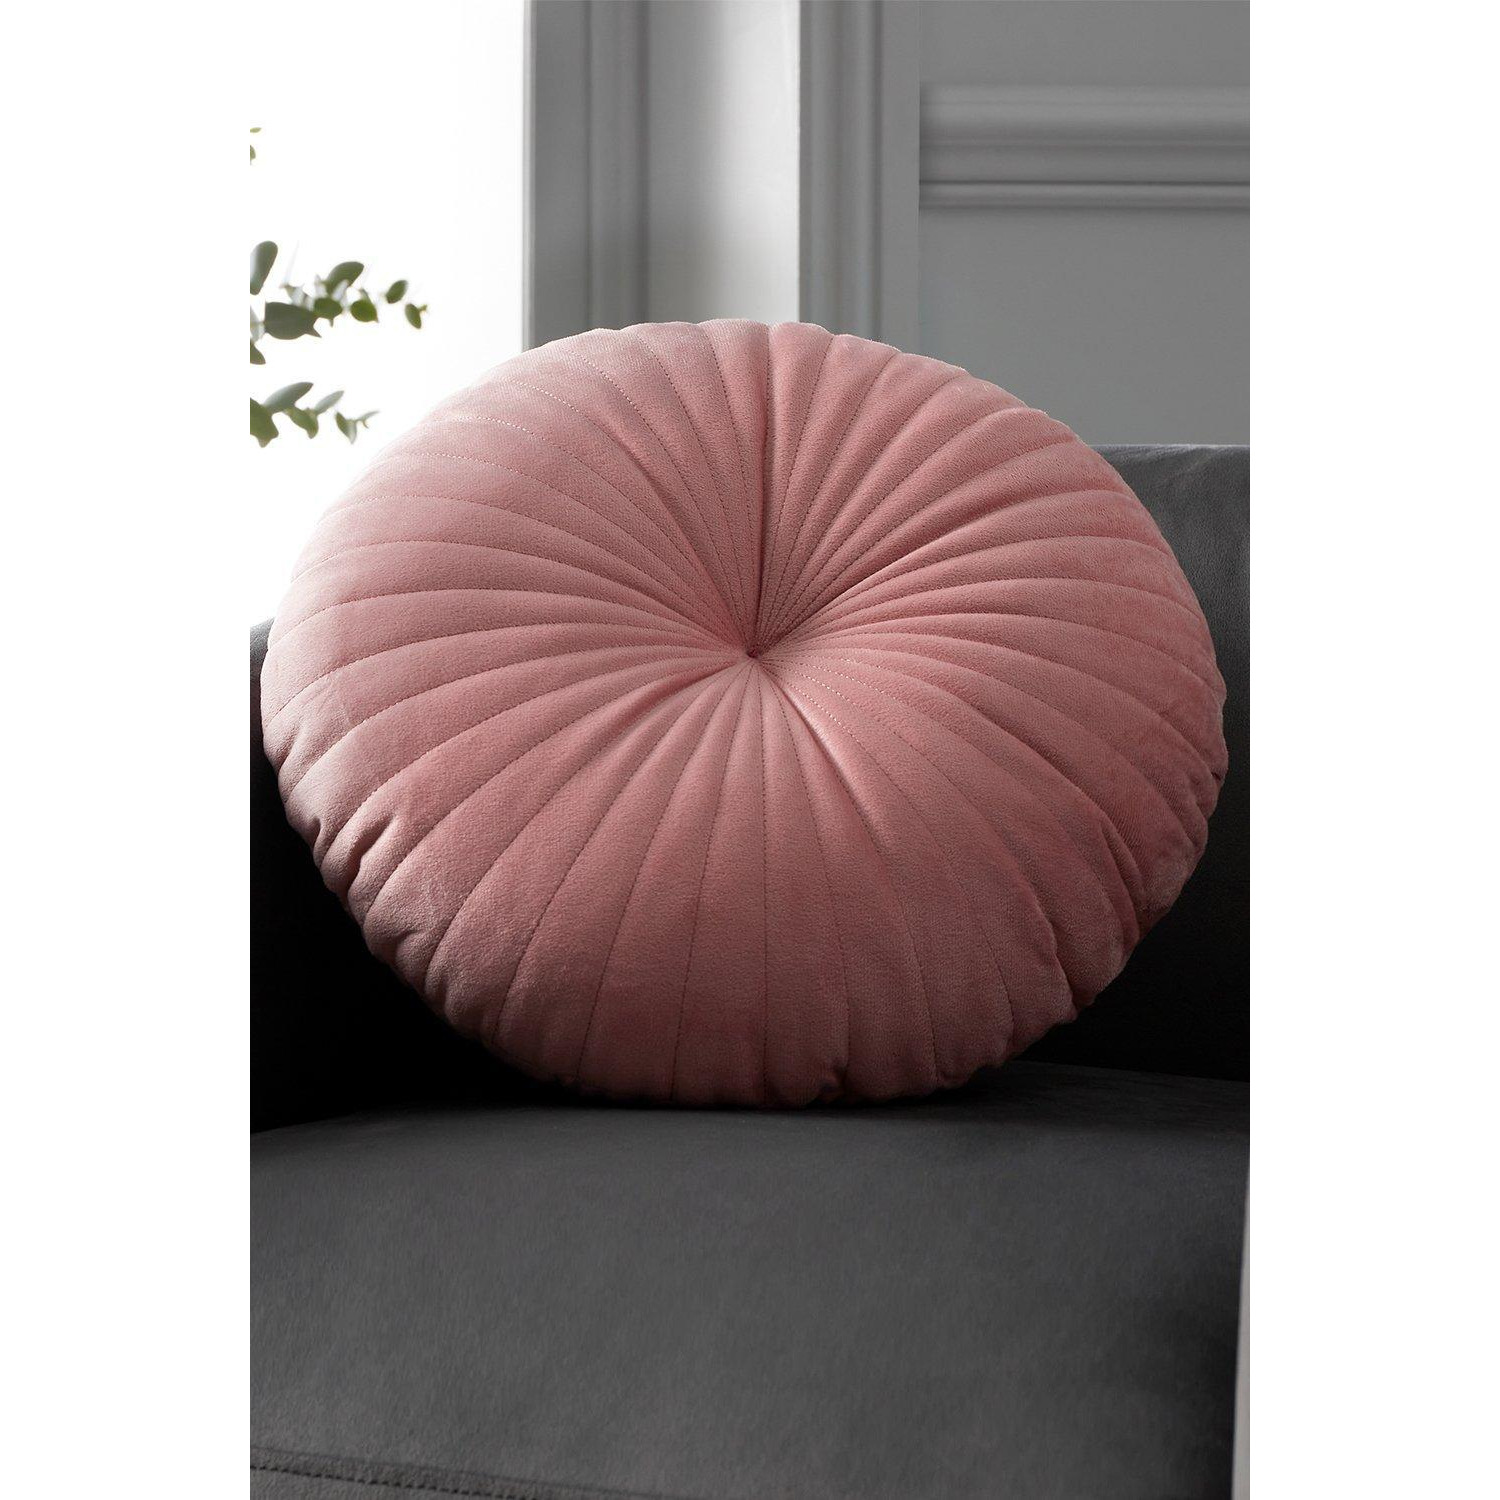 'Round' Cushion - image 1